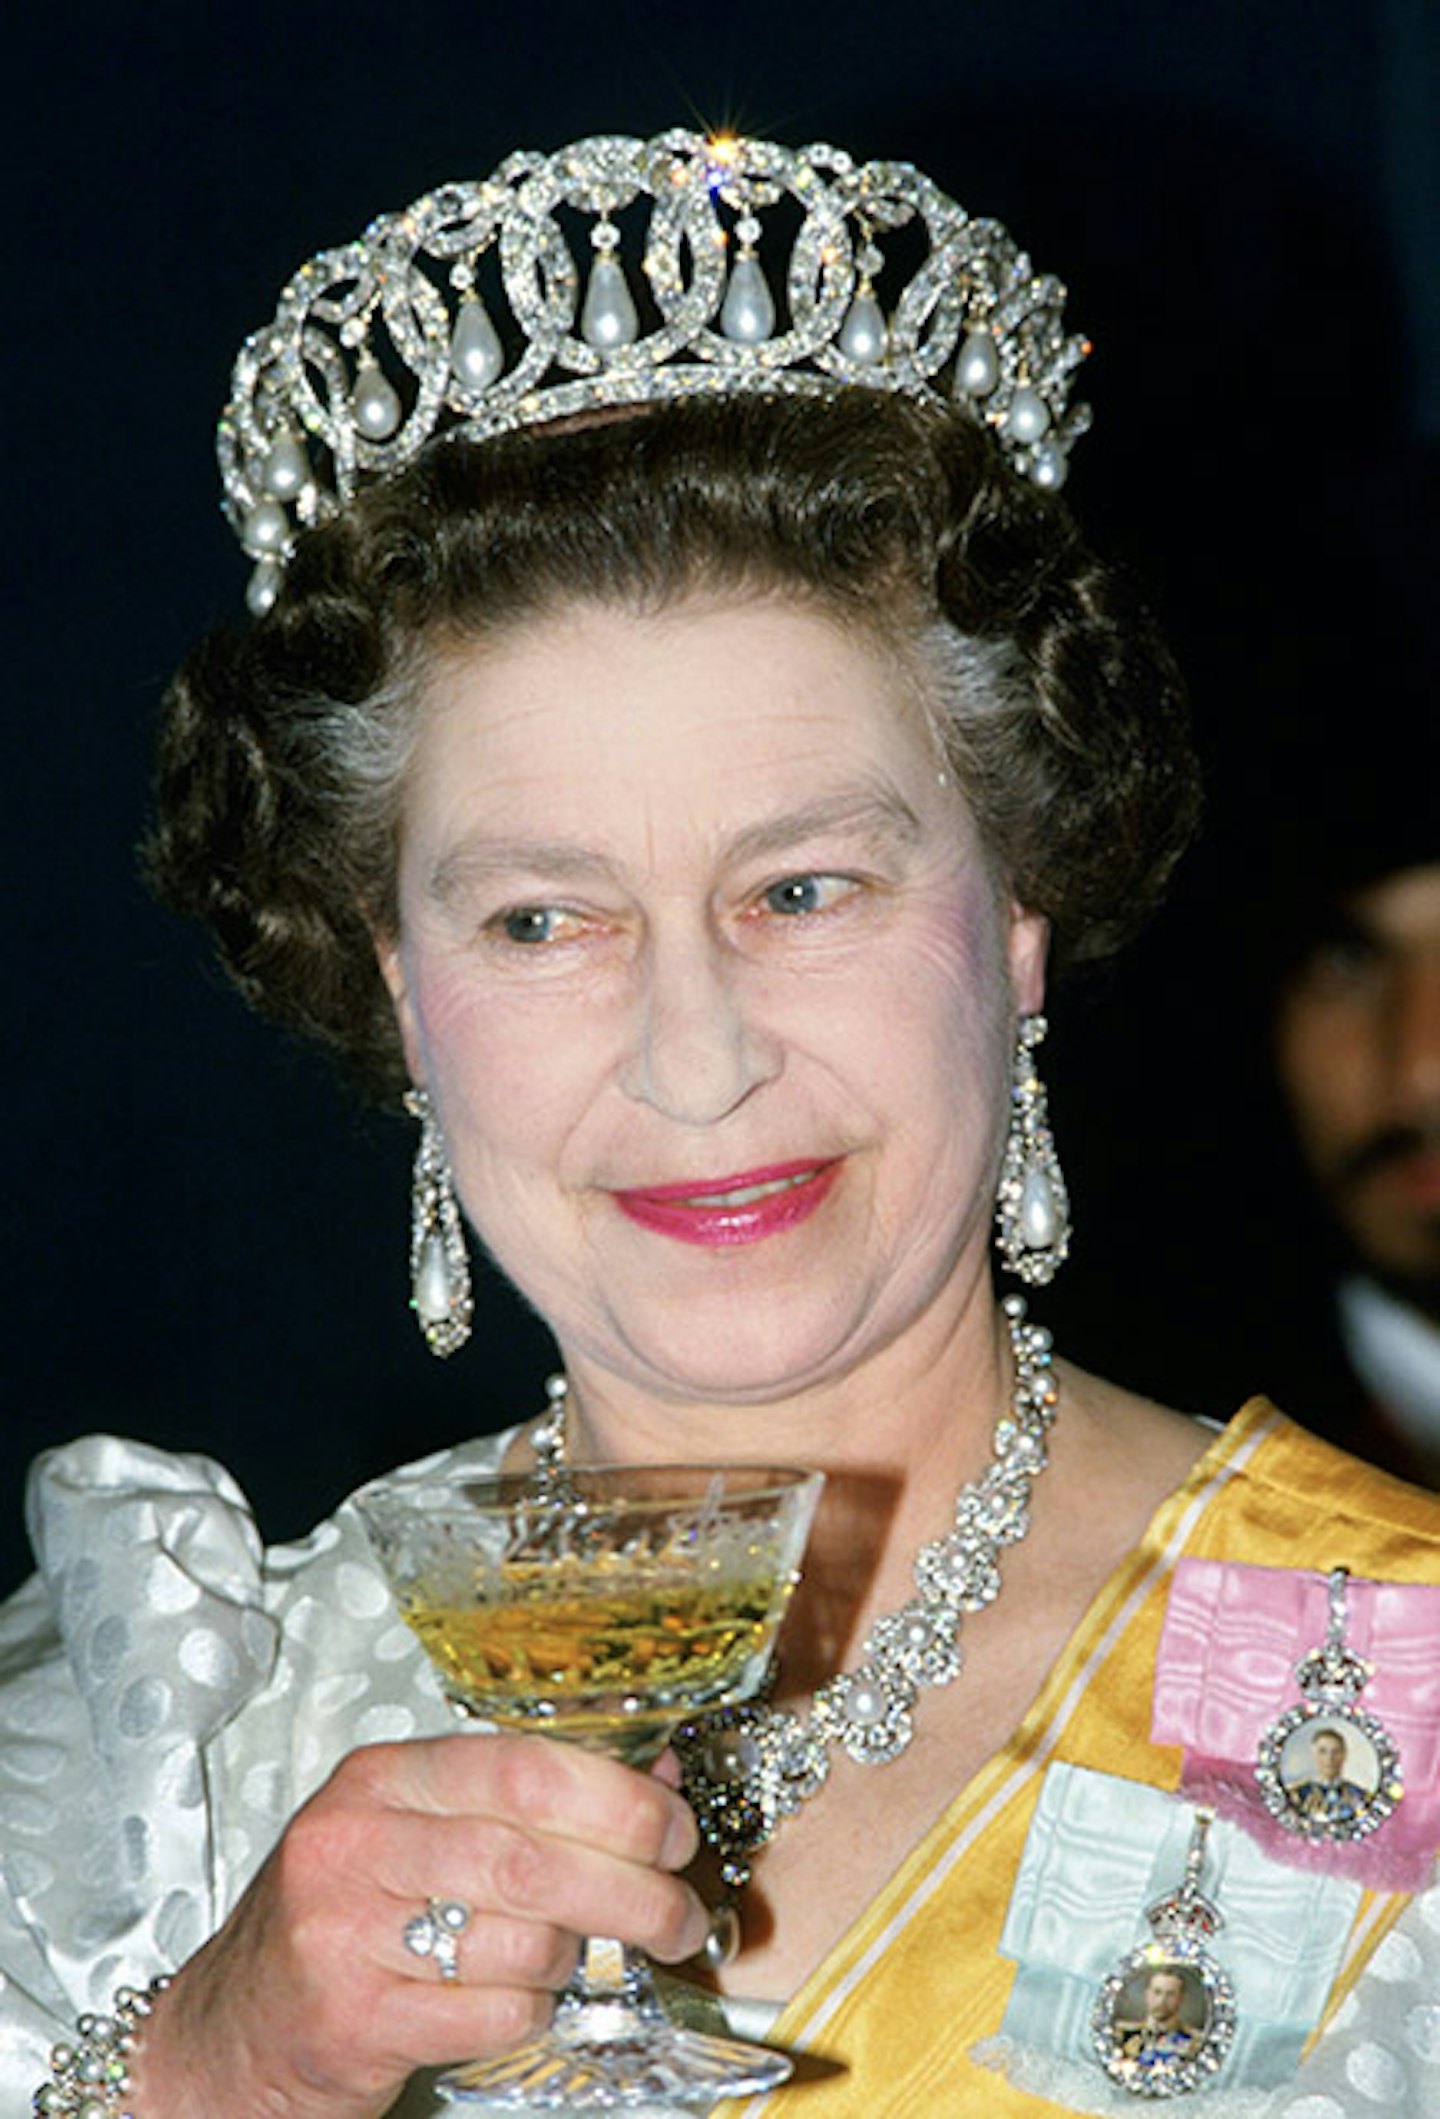 Best photos of the Queen